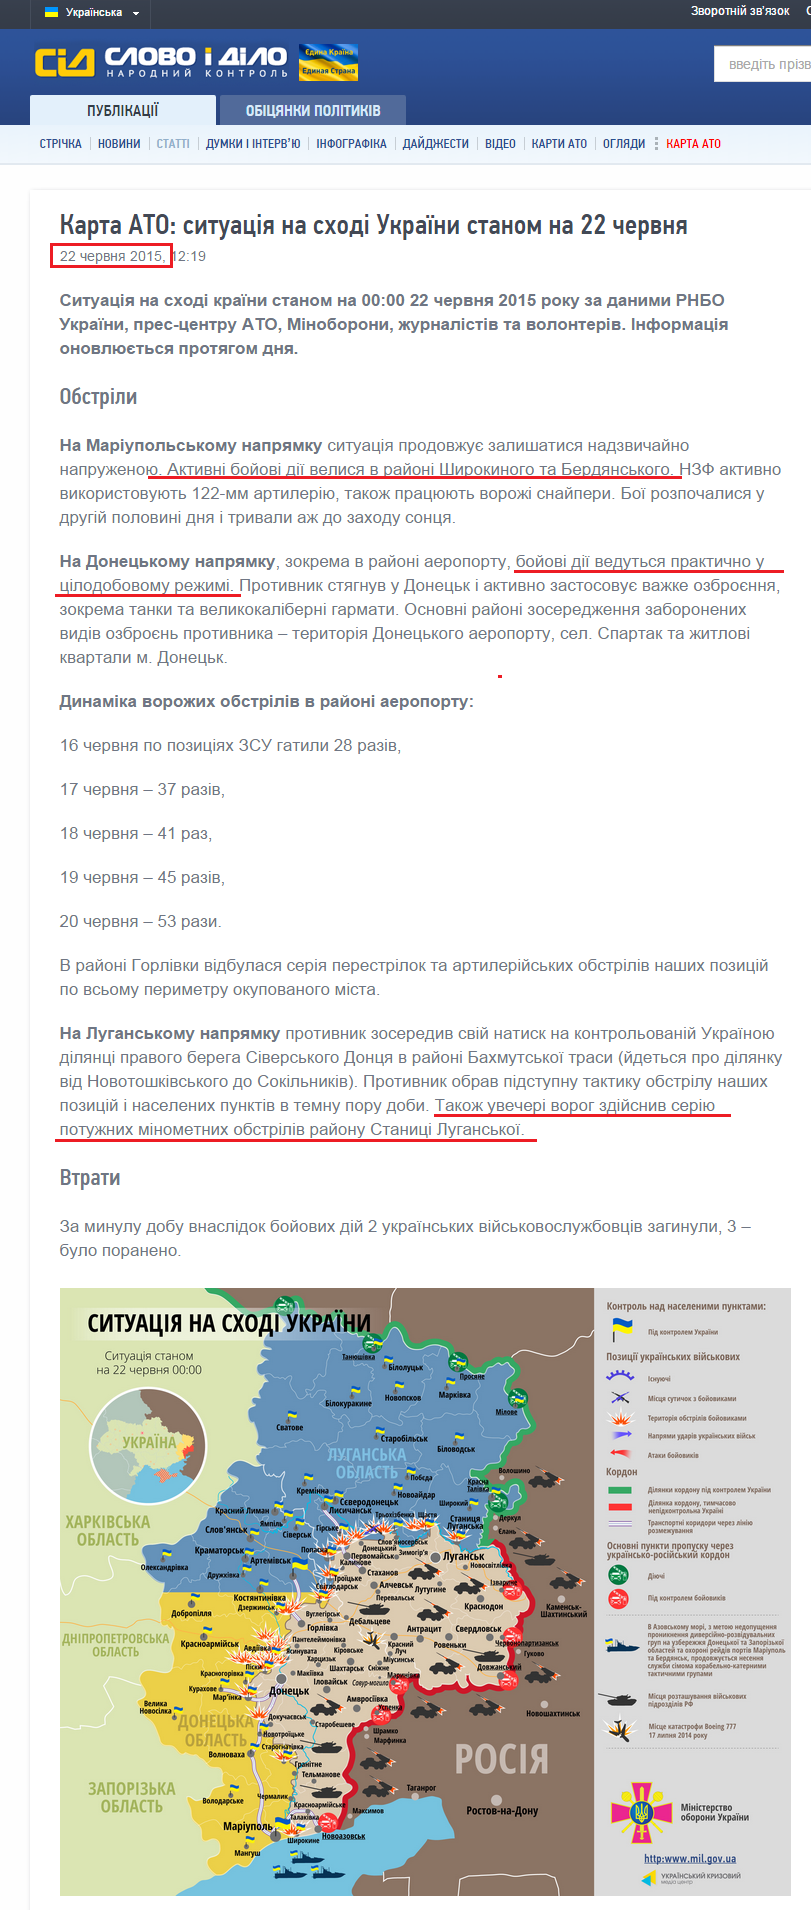 http://www.slovoidilo.ua/articles/9941/2015-06-22/karta-ato-situaciya-na-vostoke-ukrainy-po-sostoyaniyu-na-22-iyunya.html